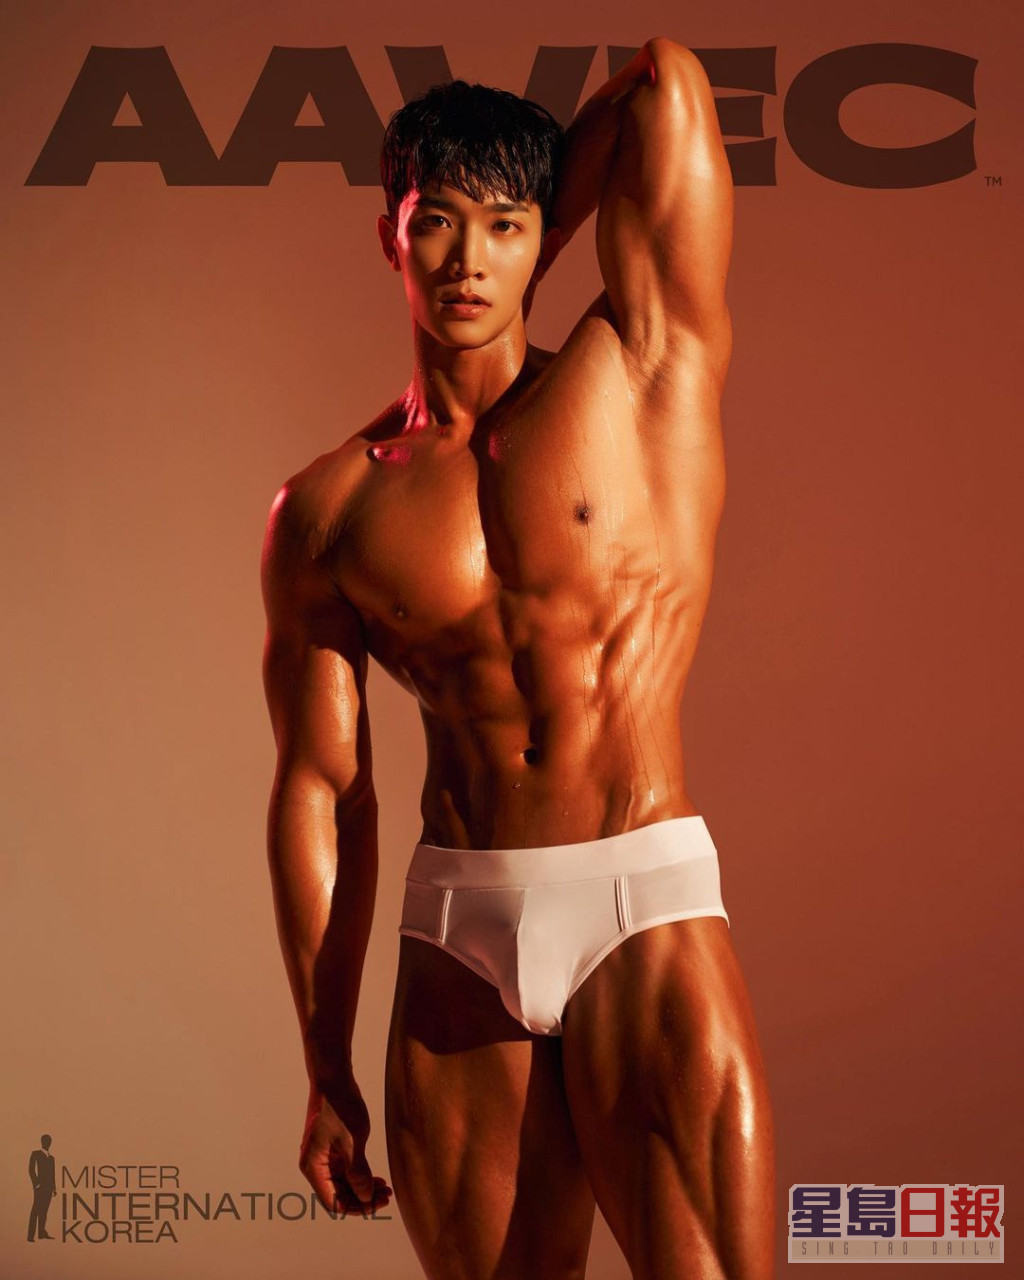 22號 김주영 (Kim jooyoung)  年齡：29  身高：176cm  體重：74kg  職業：私人教練